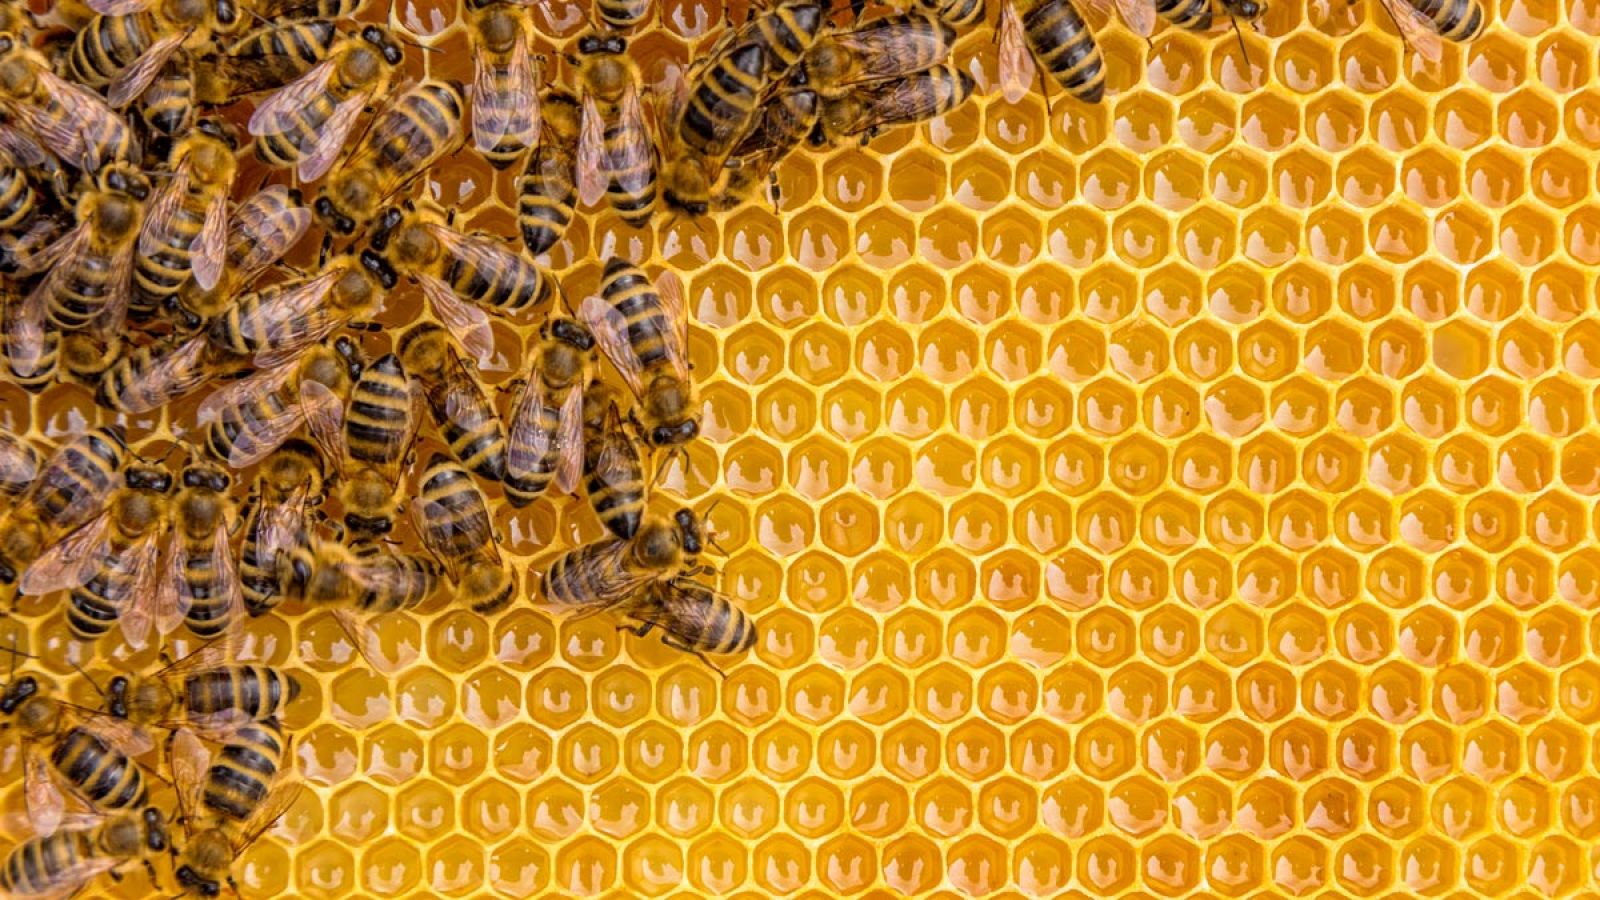 71 de los 100 cultivos que proporcionan el 90% de la alimentación mundial dependen de la polinización de las abejas.